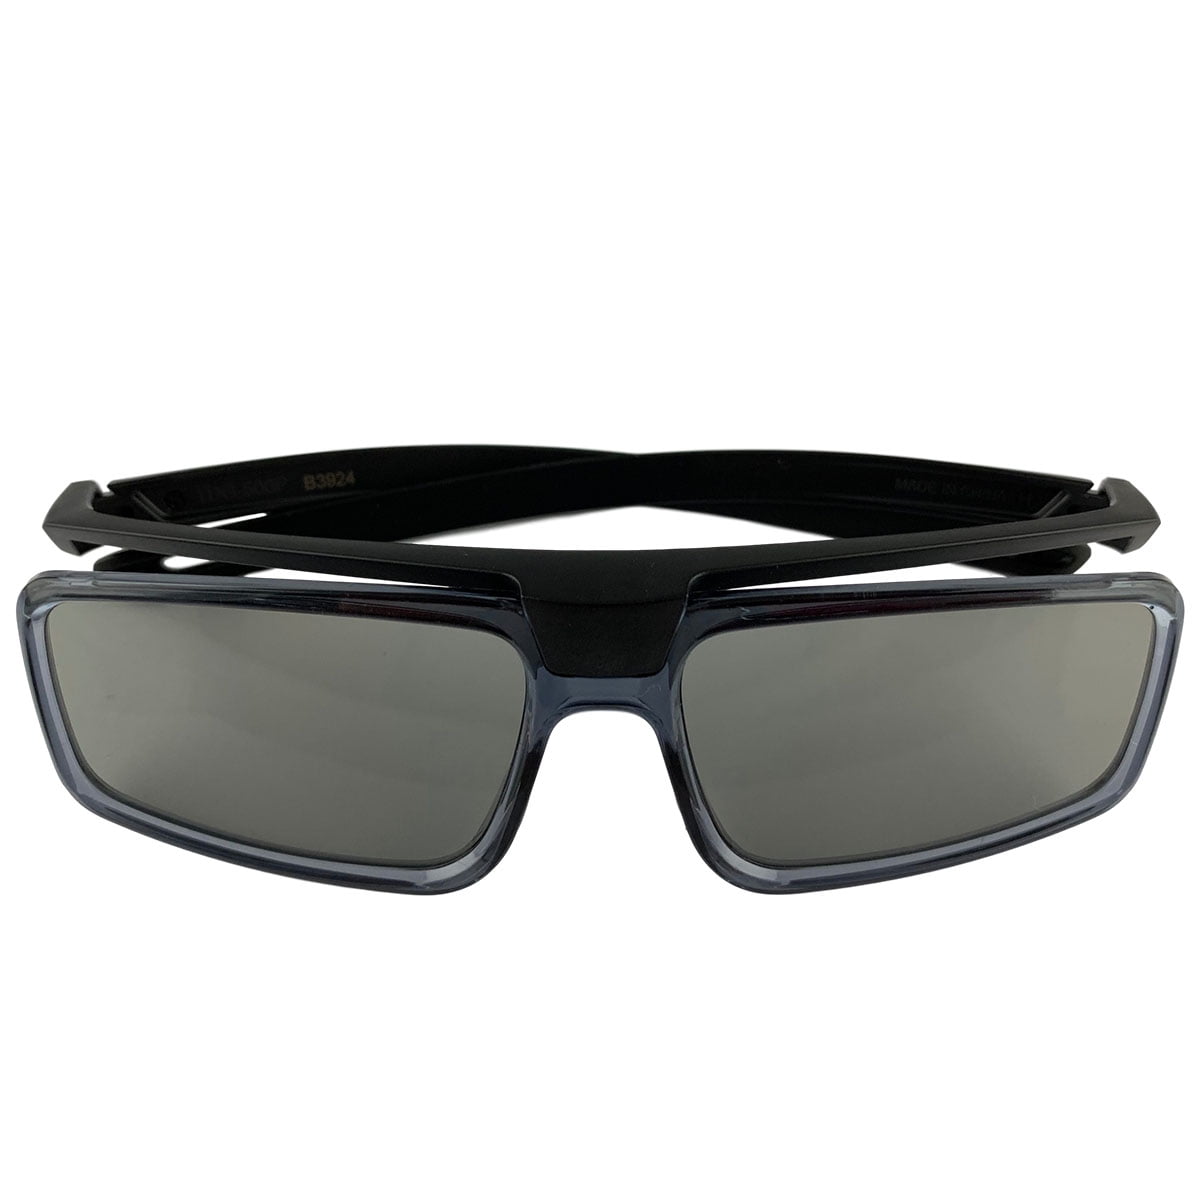 New Sony TDG-500P Passive 3D Glasses (No Box)